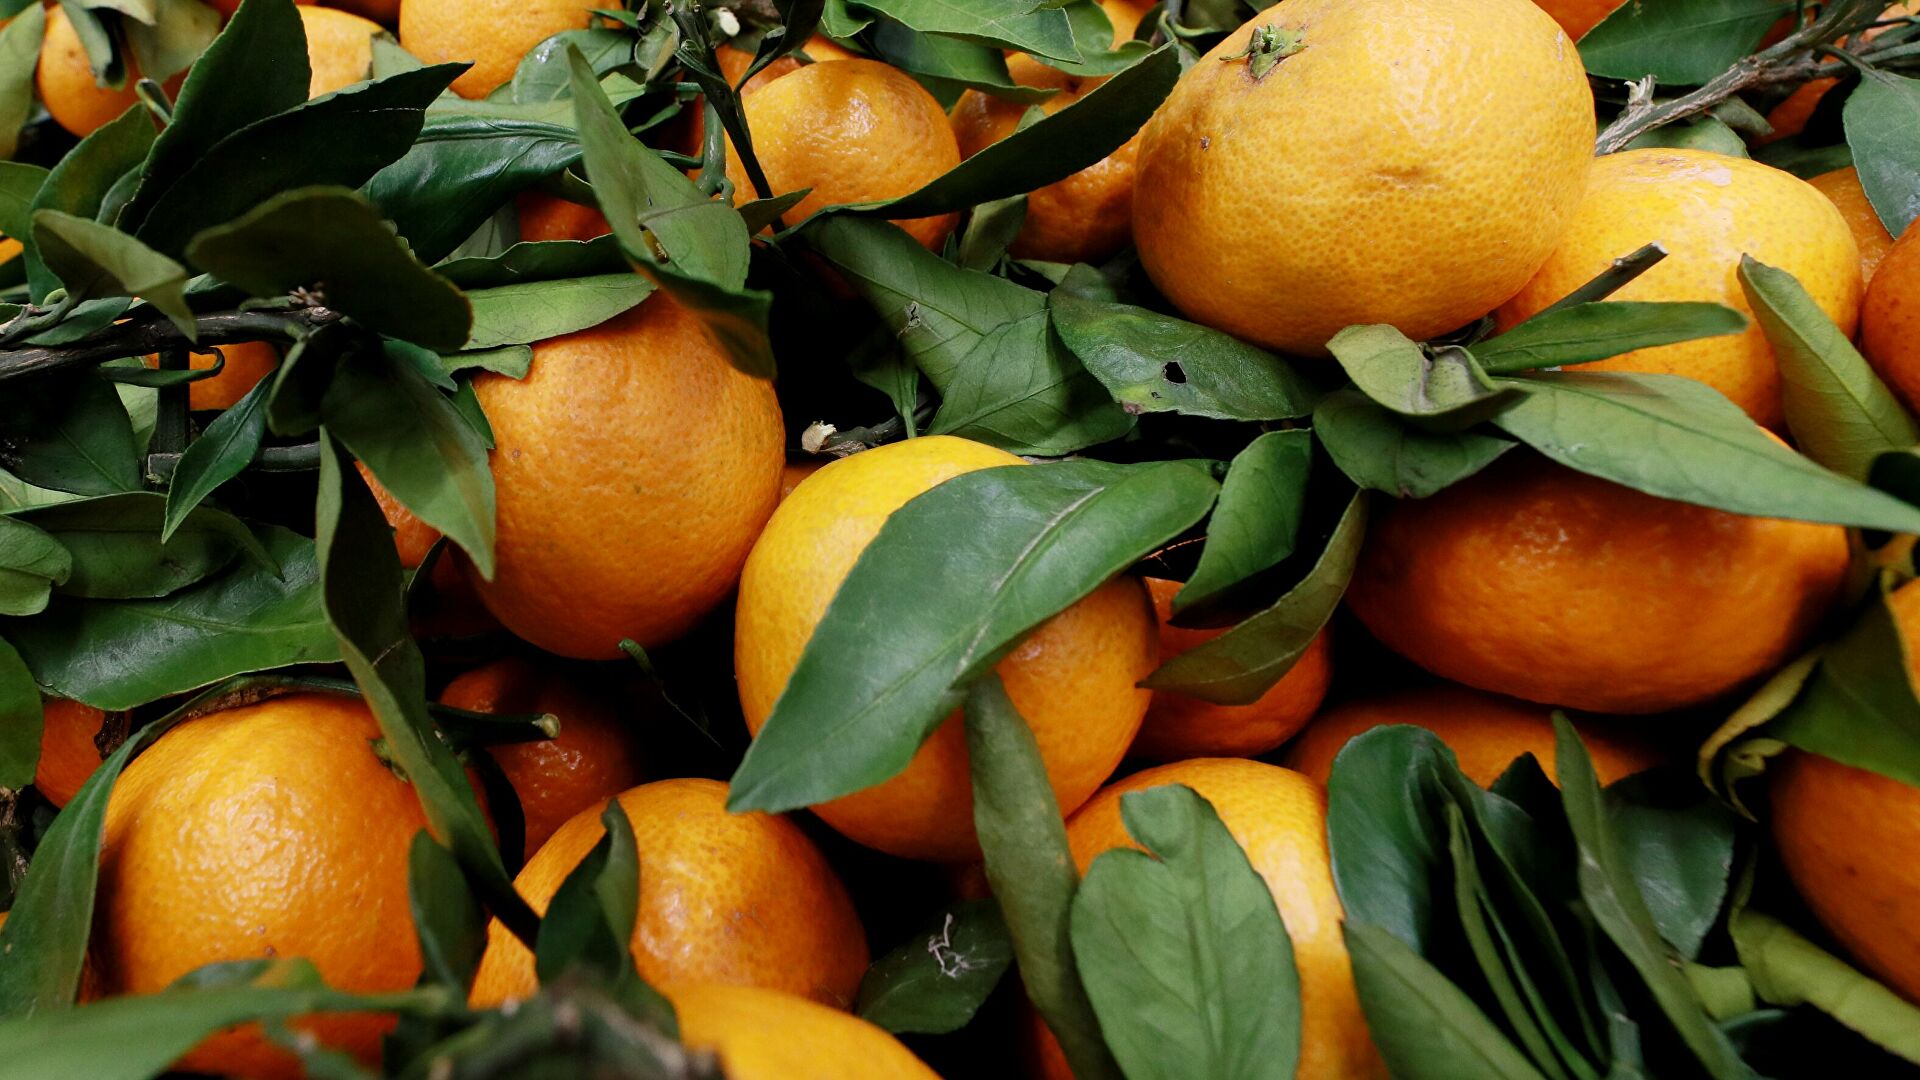 Эксперты рассказали о сезонном росте цен на мандарины в России